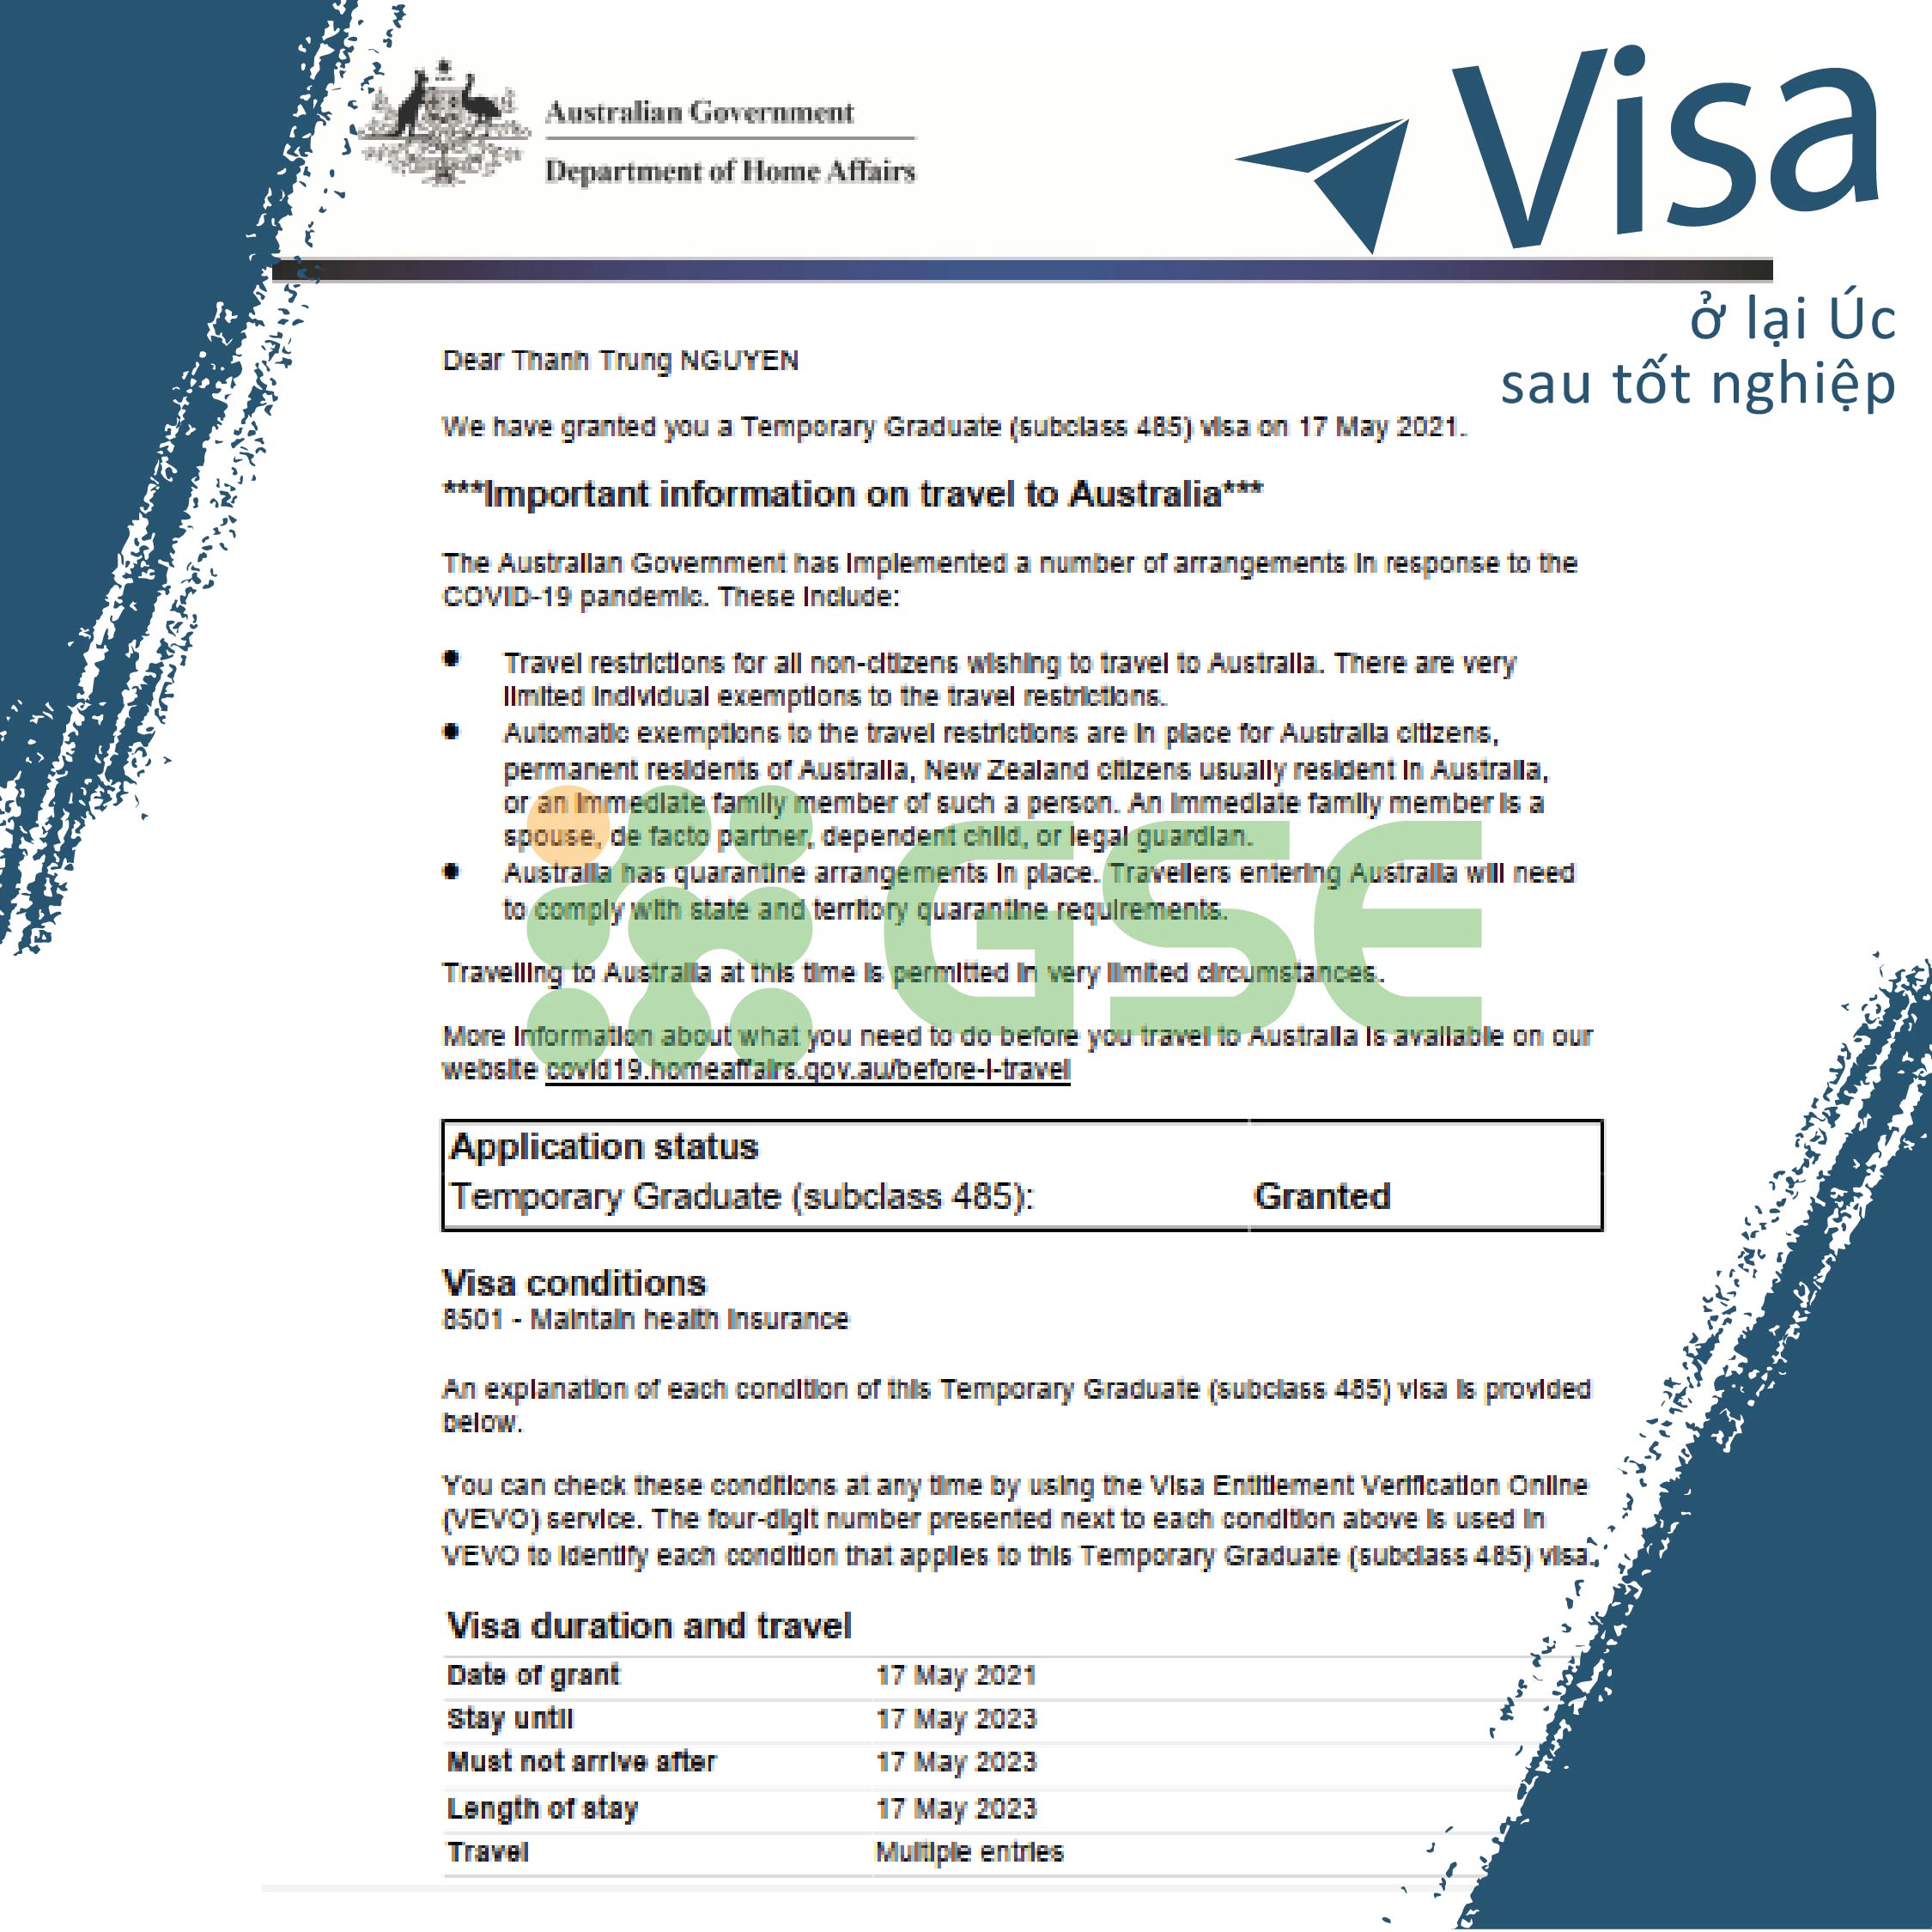 visa o lai uc sau tot nghiep 01 - Visa ở lại Úc sau tốt nghiệp - Thành Trung